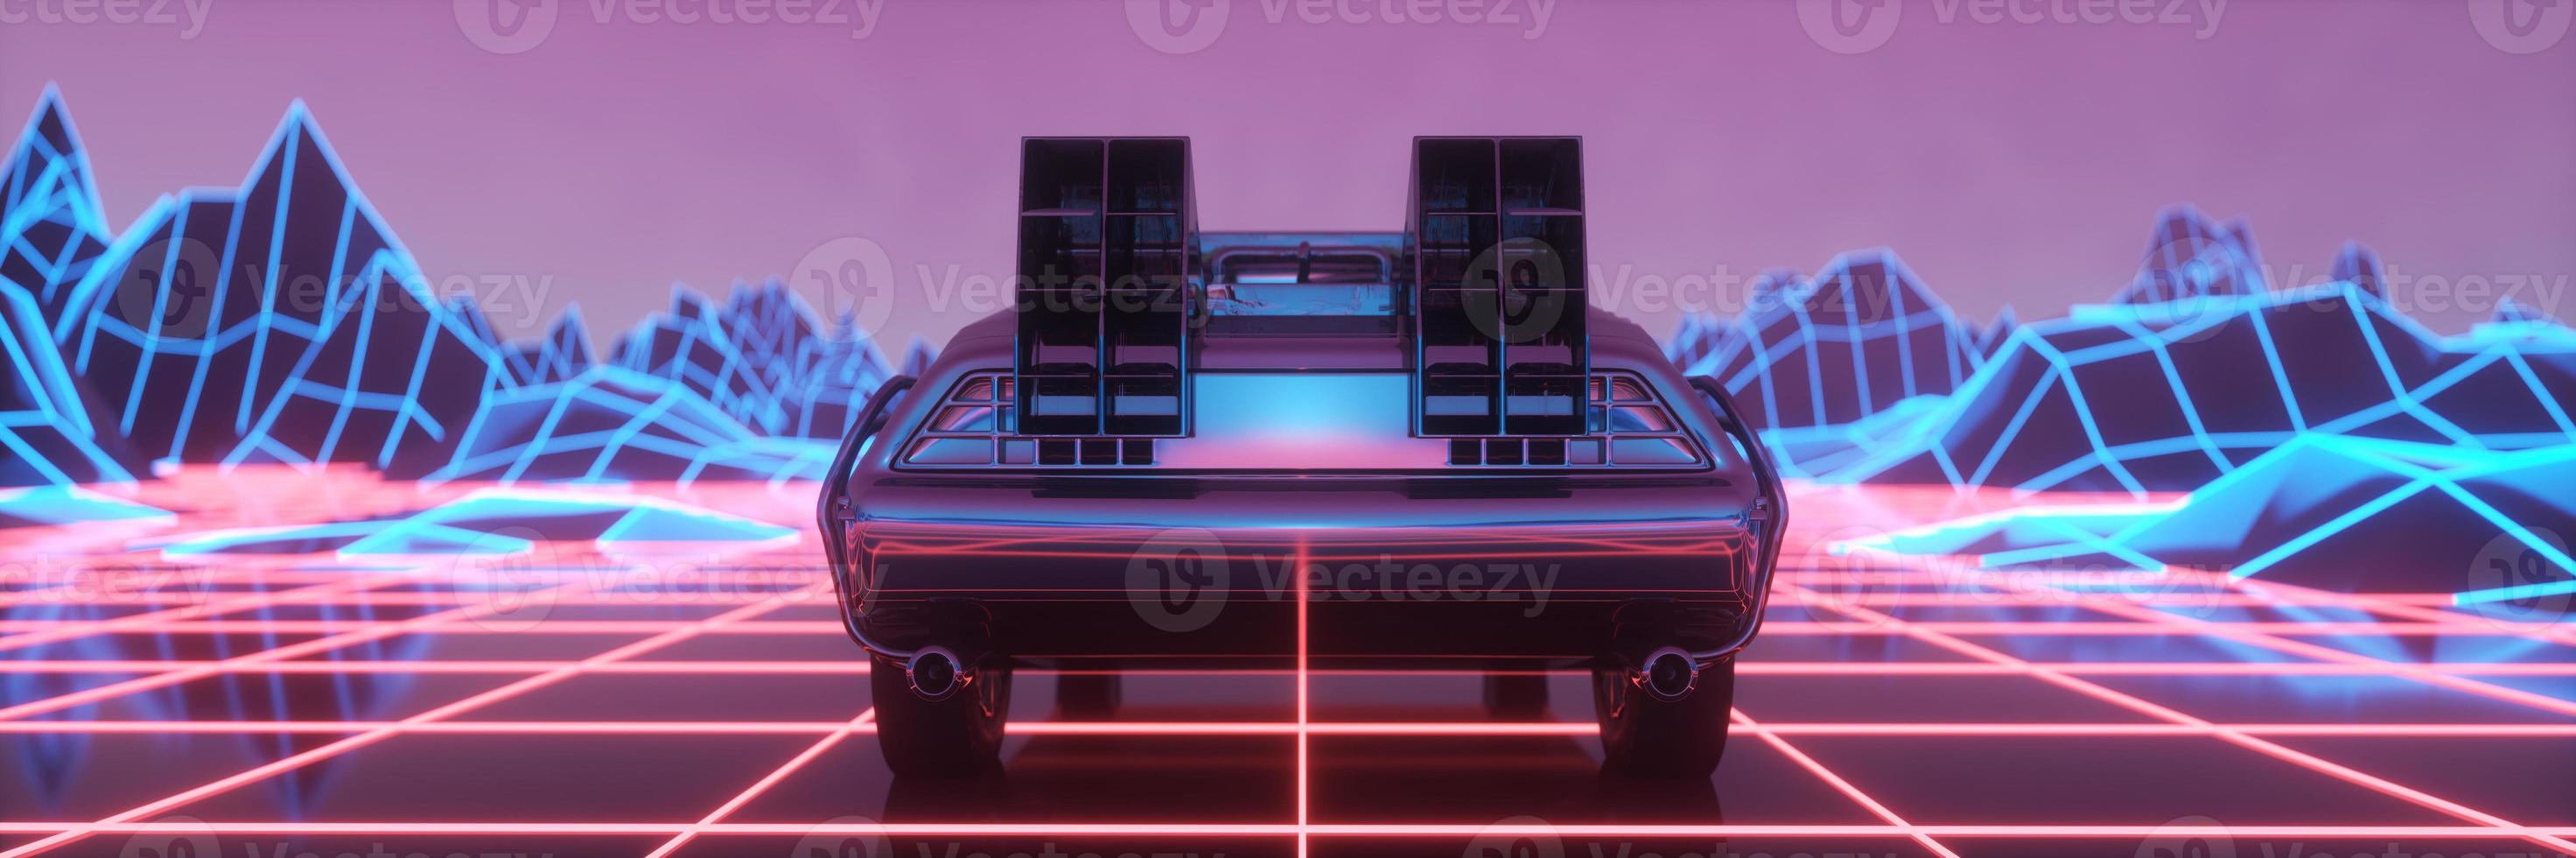 coche al estilo neon cyberpunk. Fondo de microondas de los años 80. coche retro futurista a través de la ciudad de neón. ilustración 3d foto